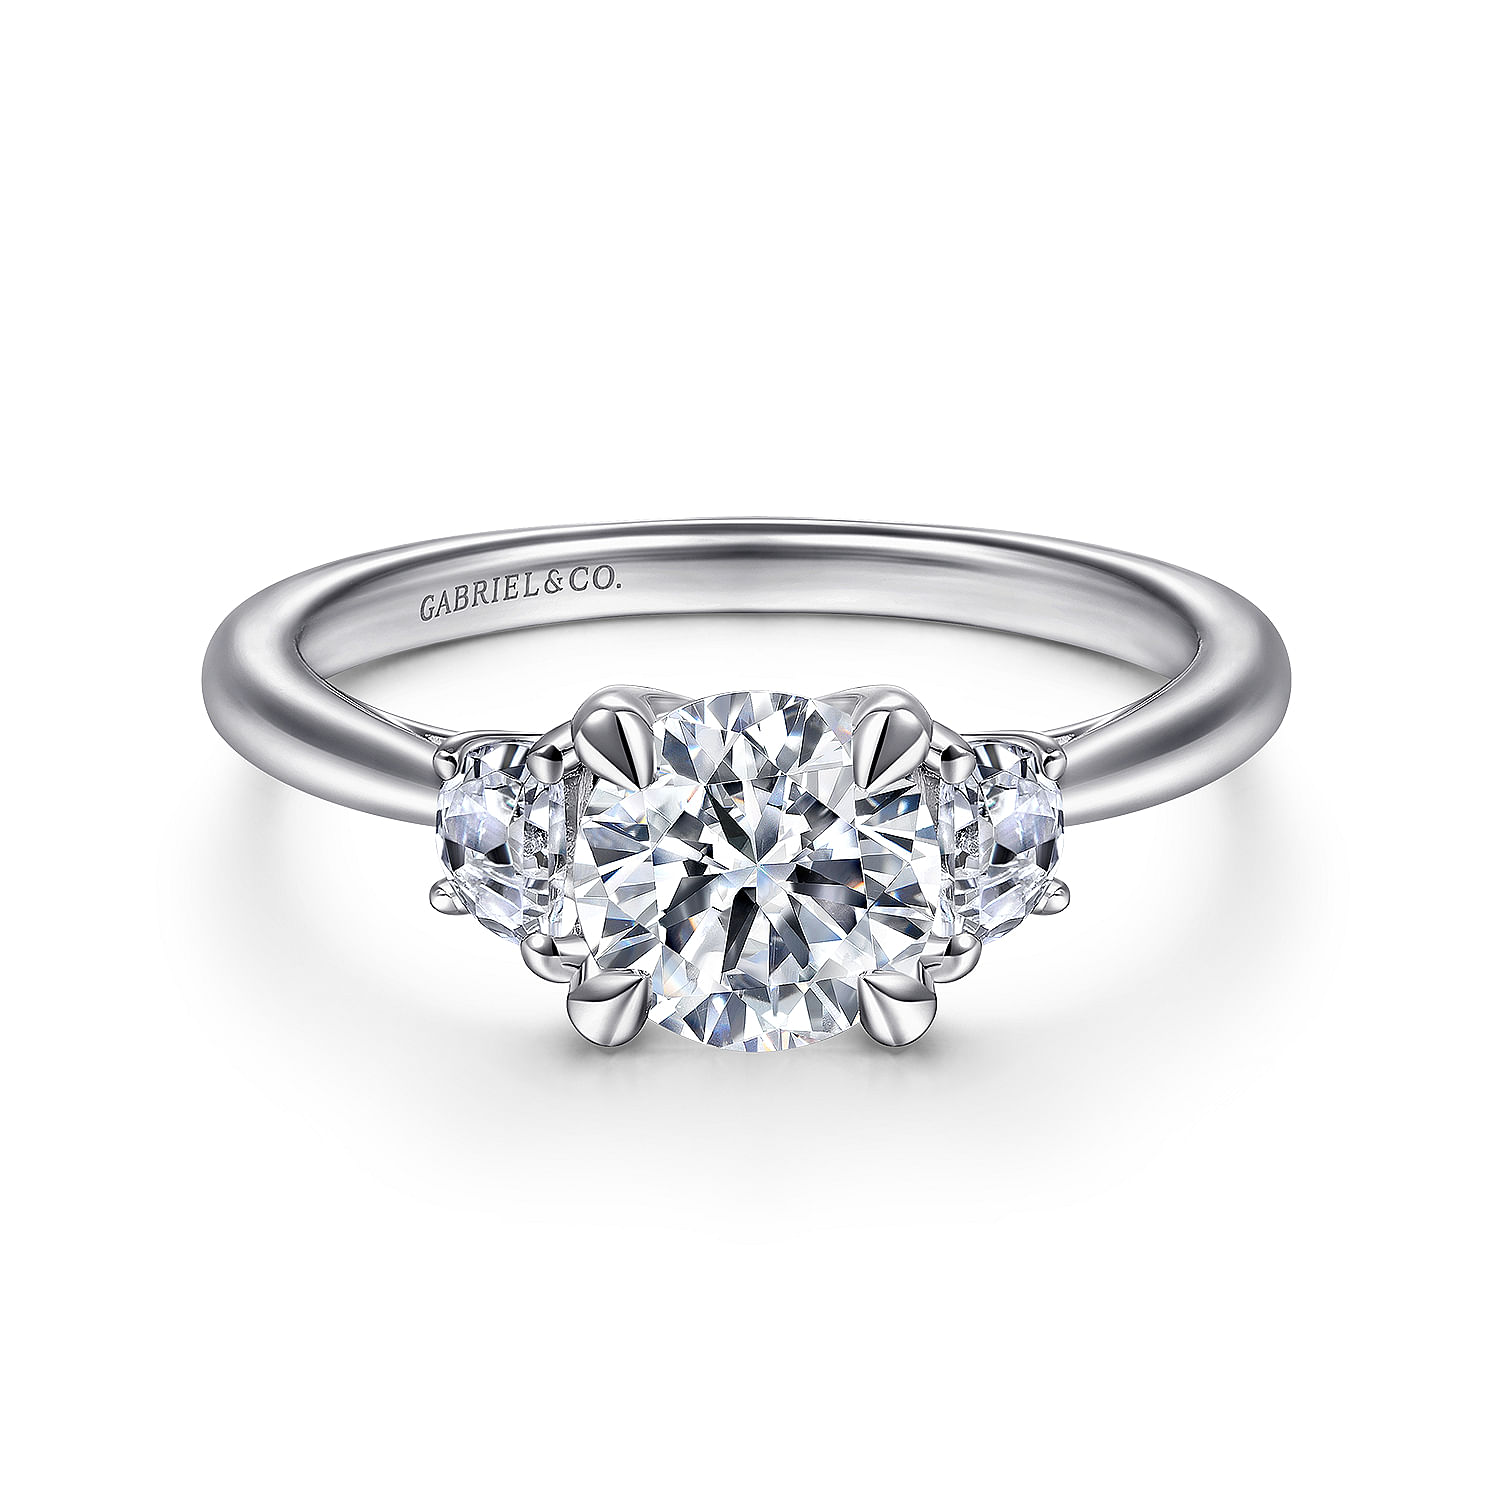 Niko---14K-White-Gold-Round-3-Stone-Diamond-Engagement-Ring1